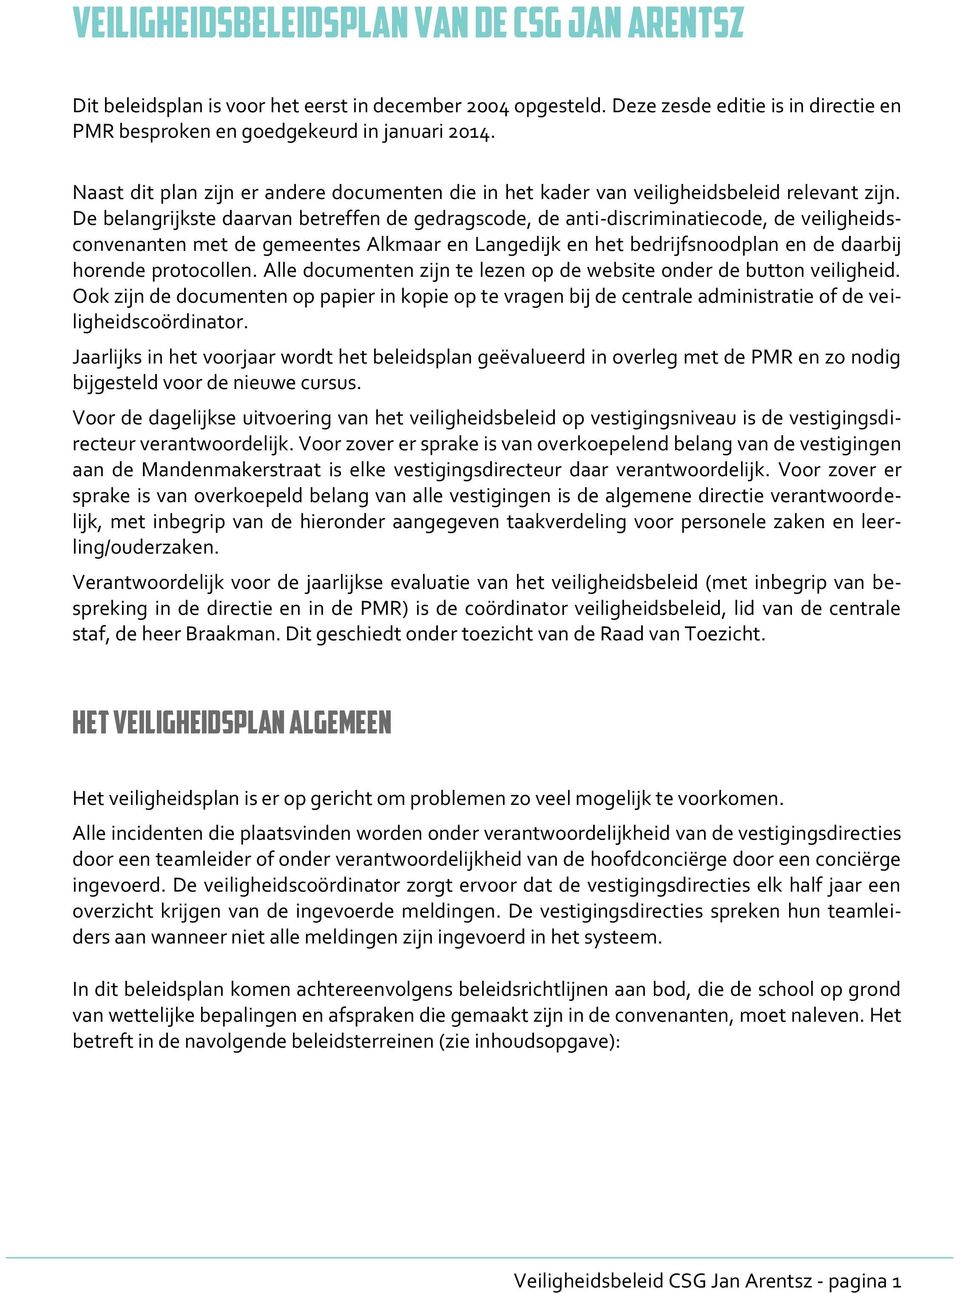 De belangrijkste daarvan betreffen de gedragscode, de anti-discriminatiecode, de veiligheidsconvenanten met de gemeentes Alkmaar en Langedijk en het bedrijfsnoodplan en de daarbij horende protocollen.